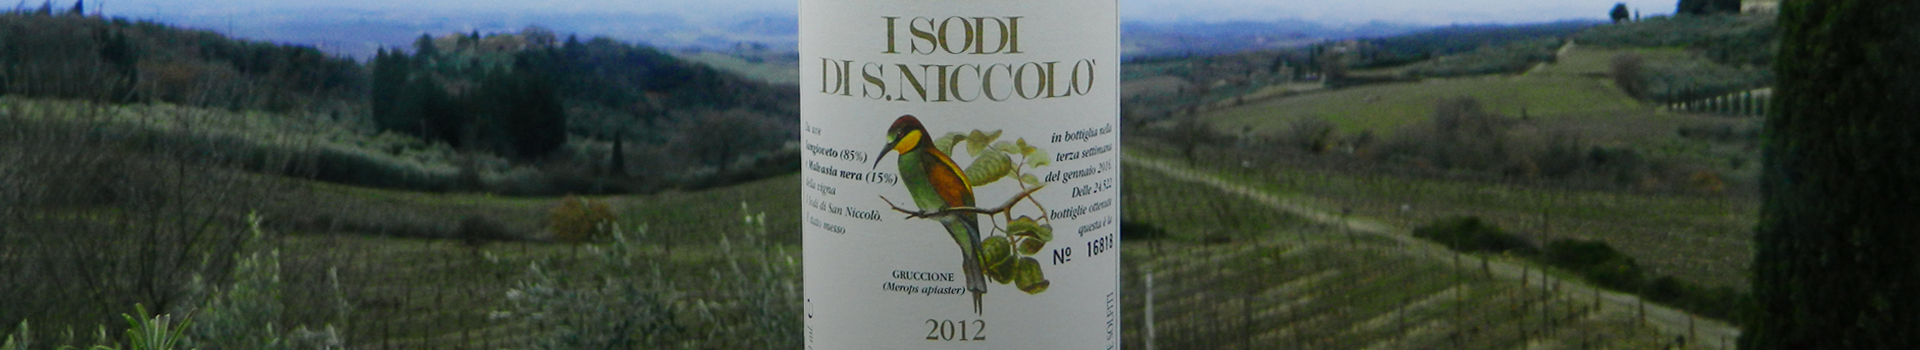 2012年的I Sodi di San Niccolò酒稳占意大利最佳葡萄酒前五